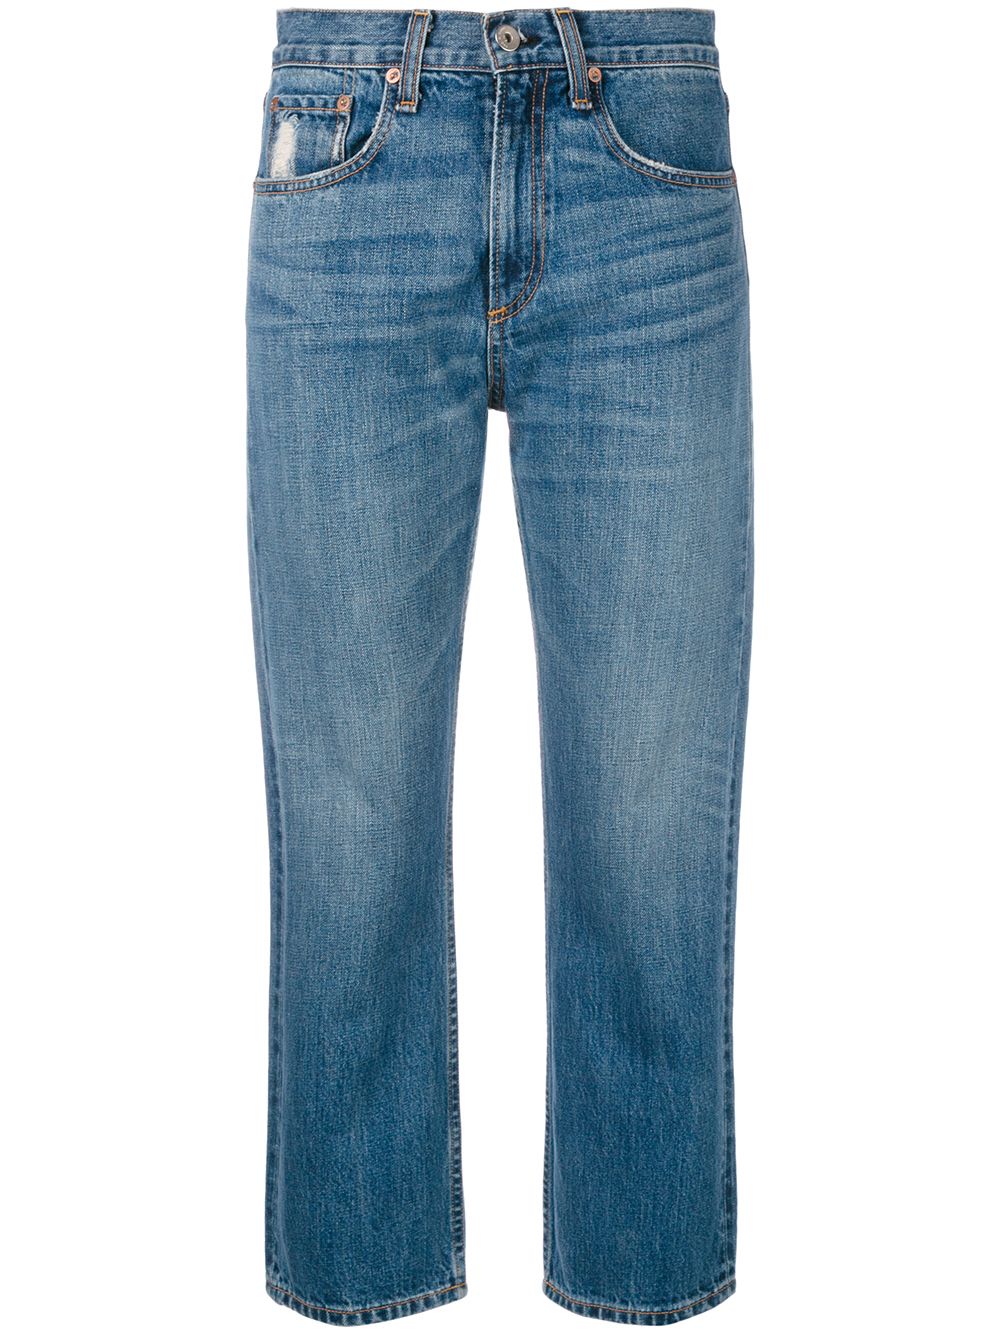 фото Rag & bone /jean укороченные джинсы